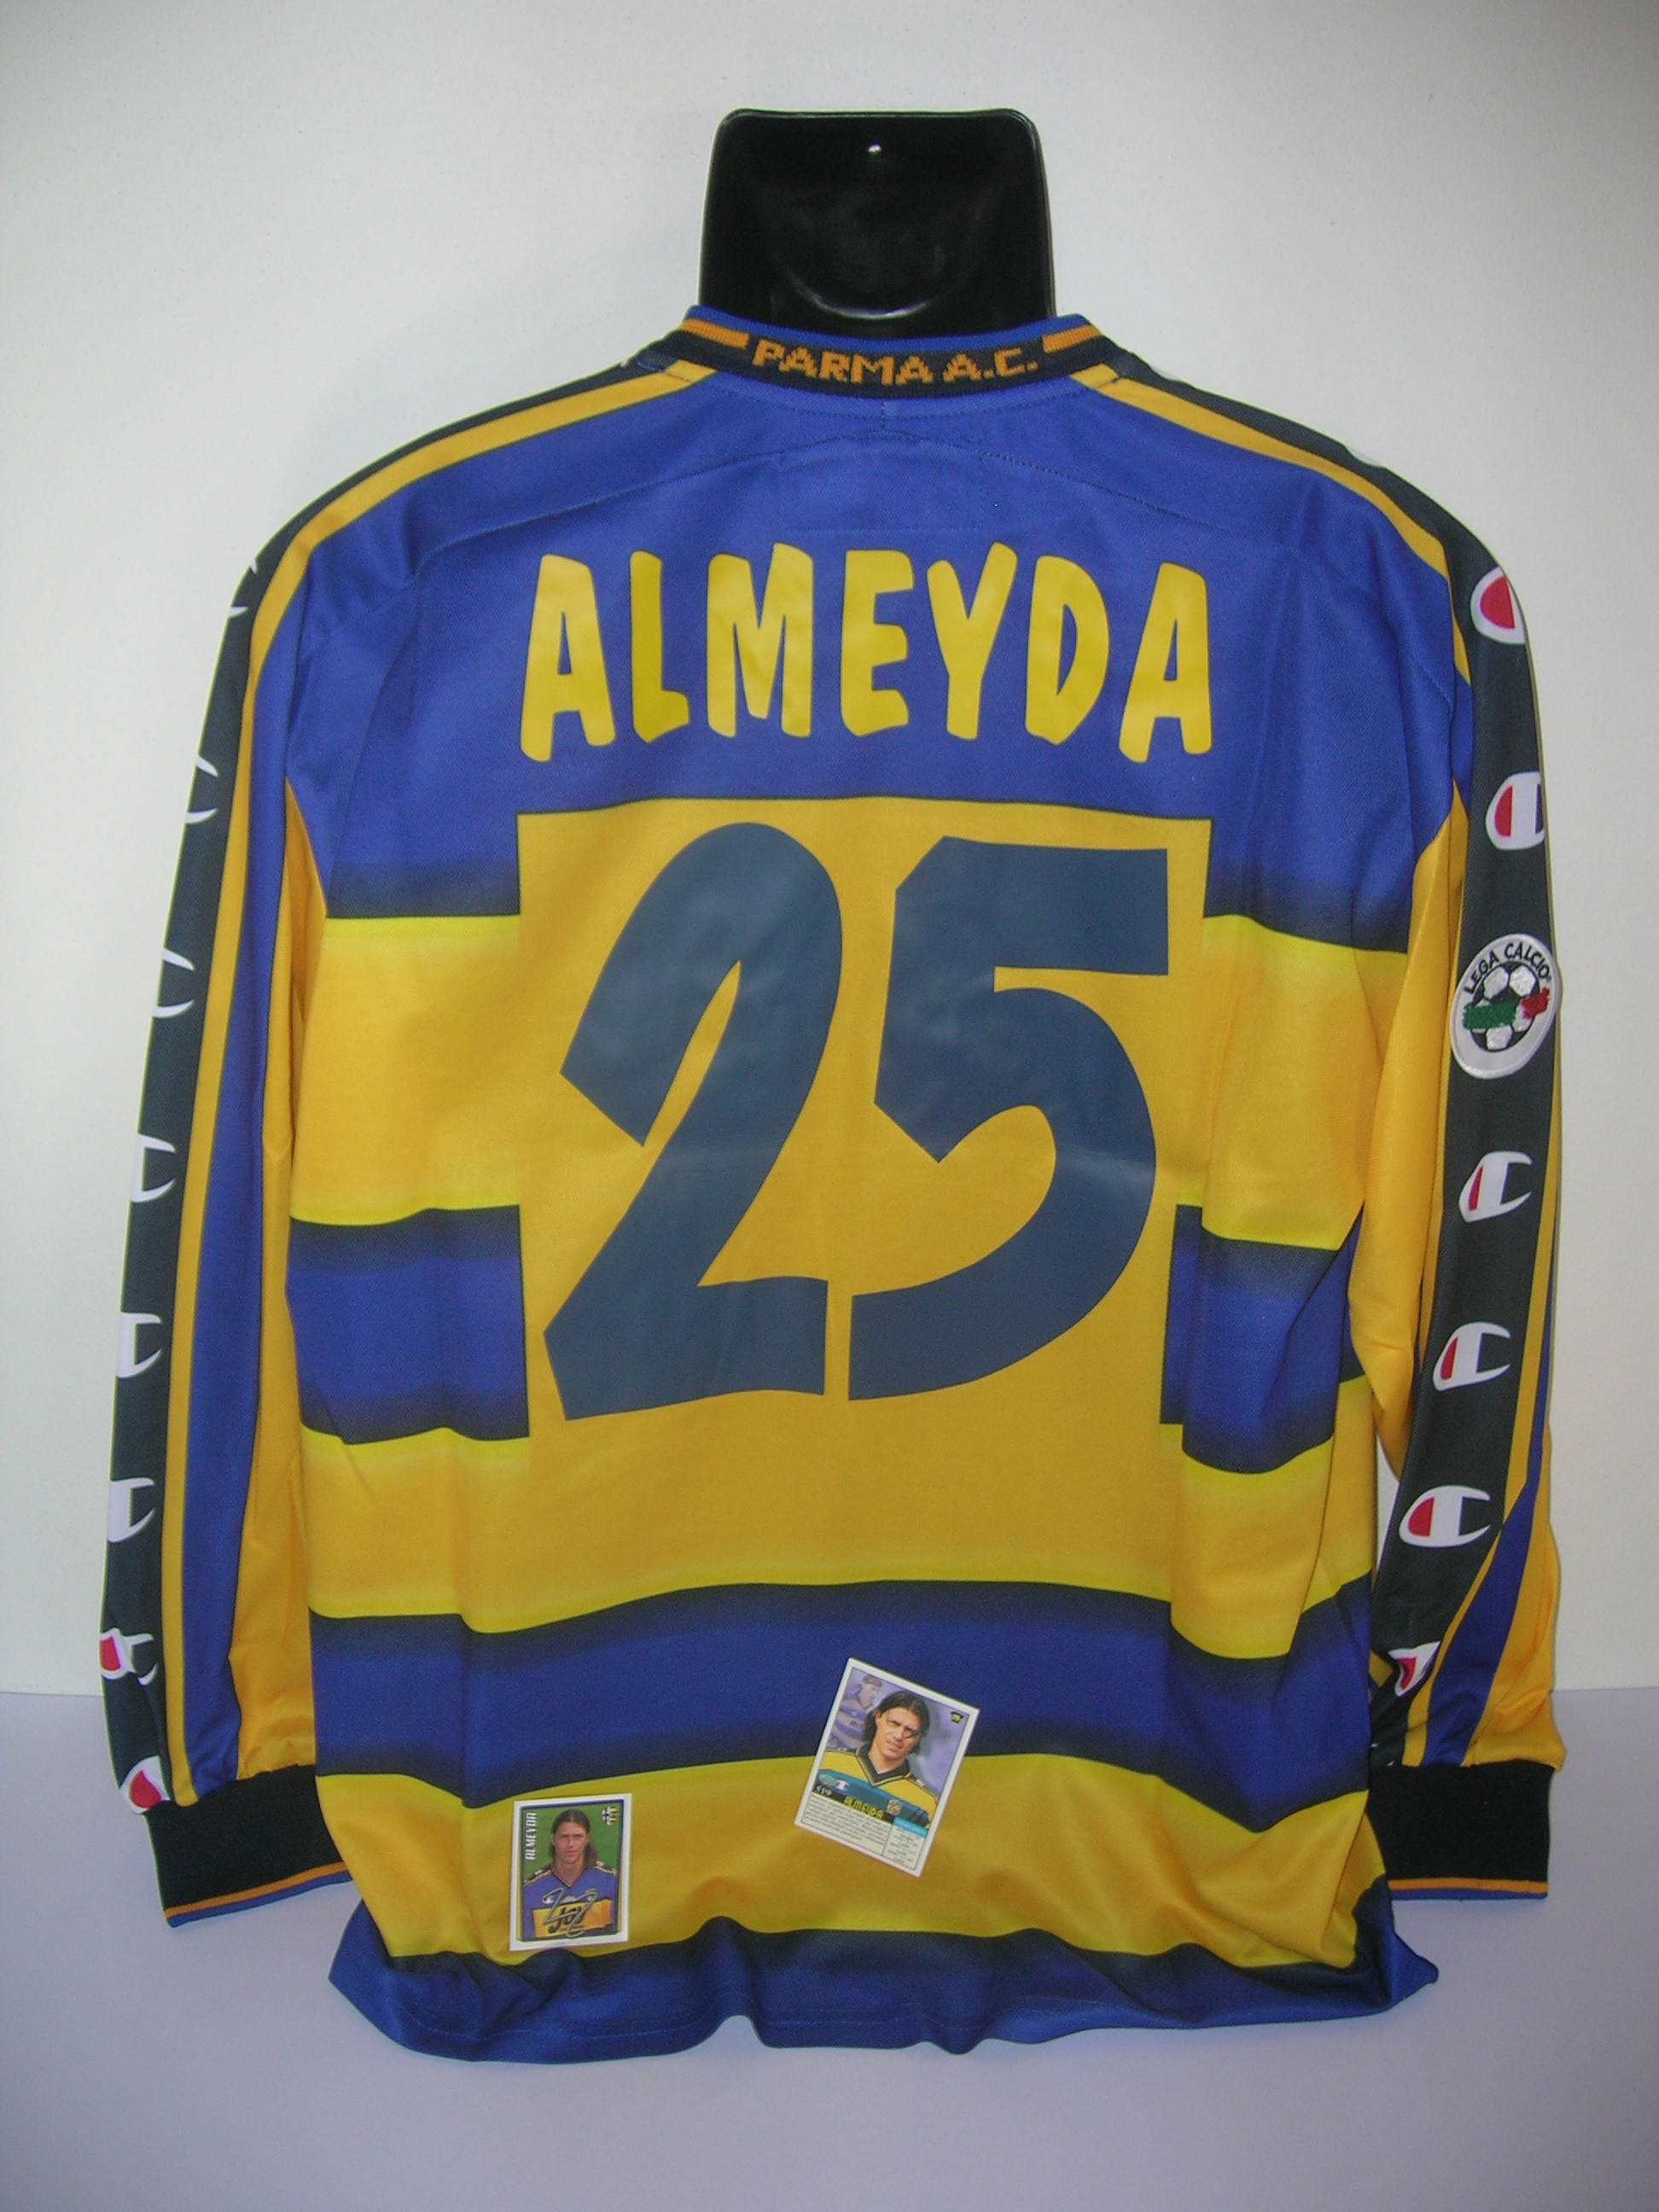 Parma   Almeyda  25   A-2